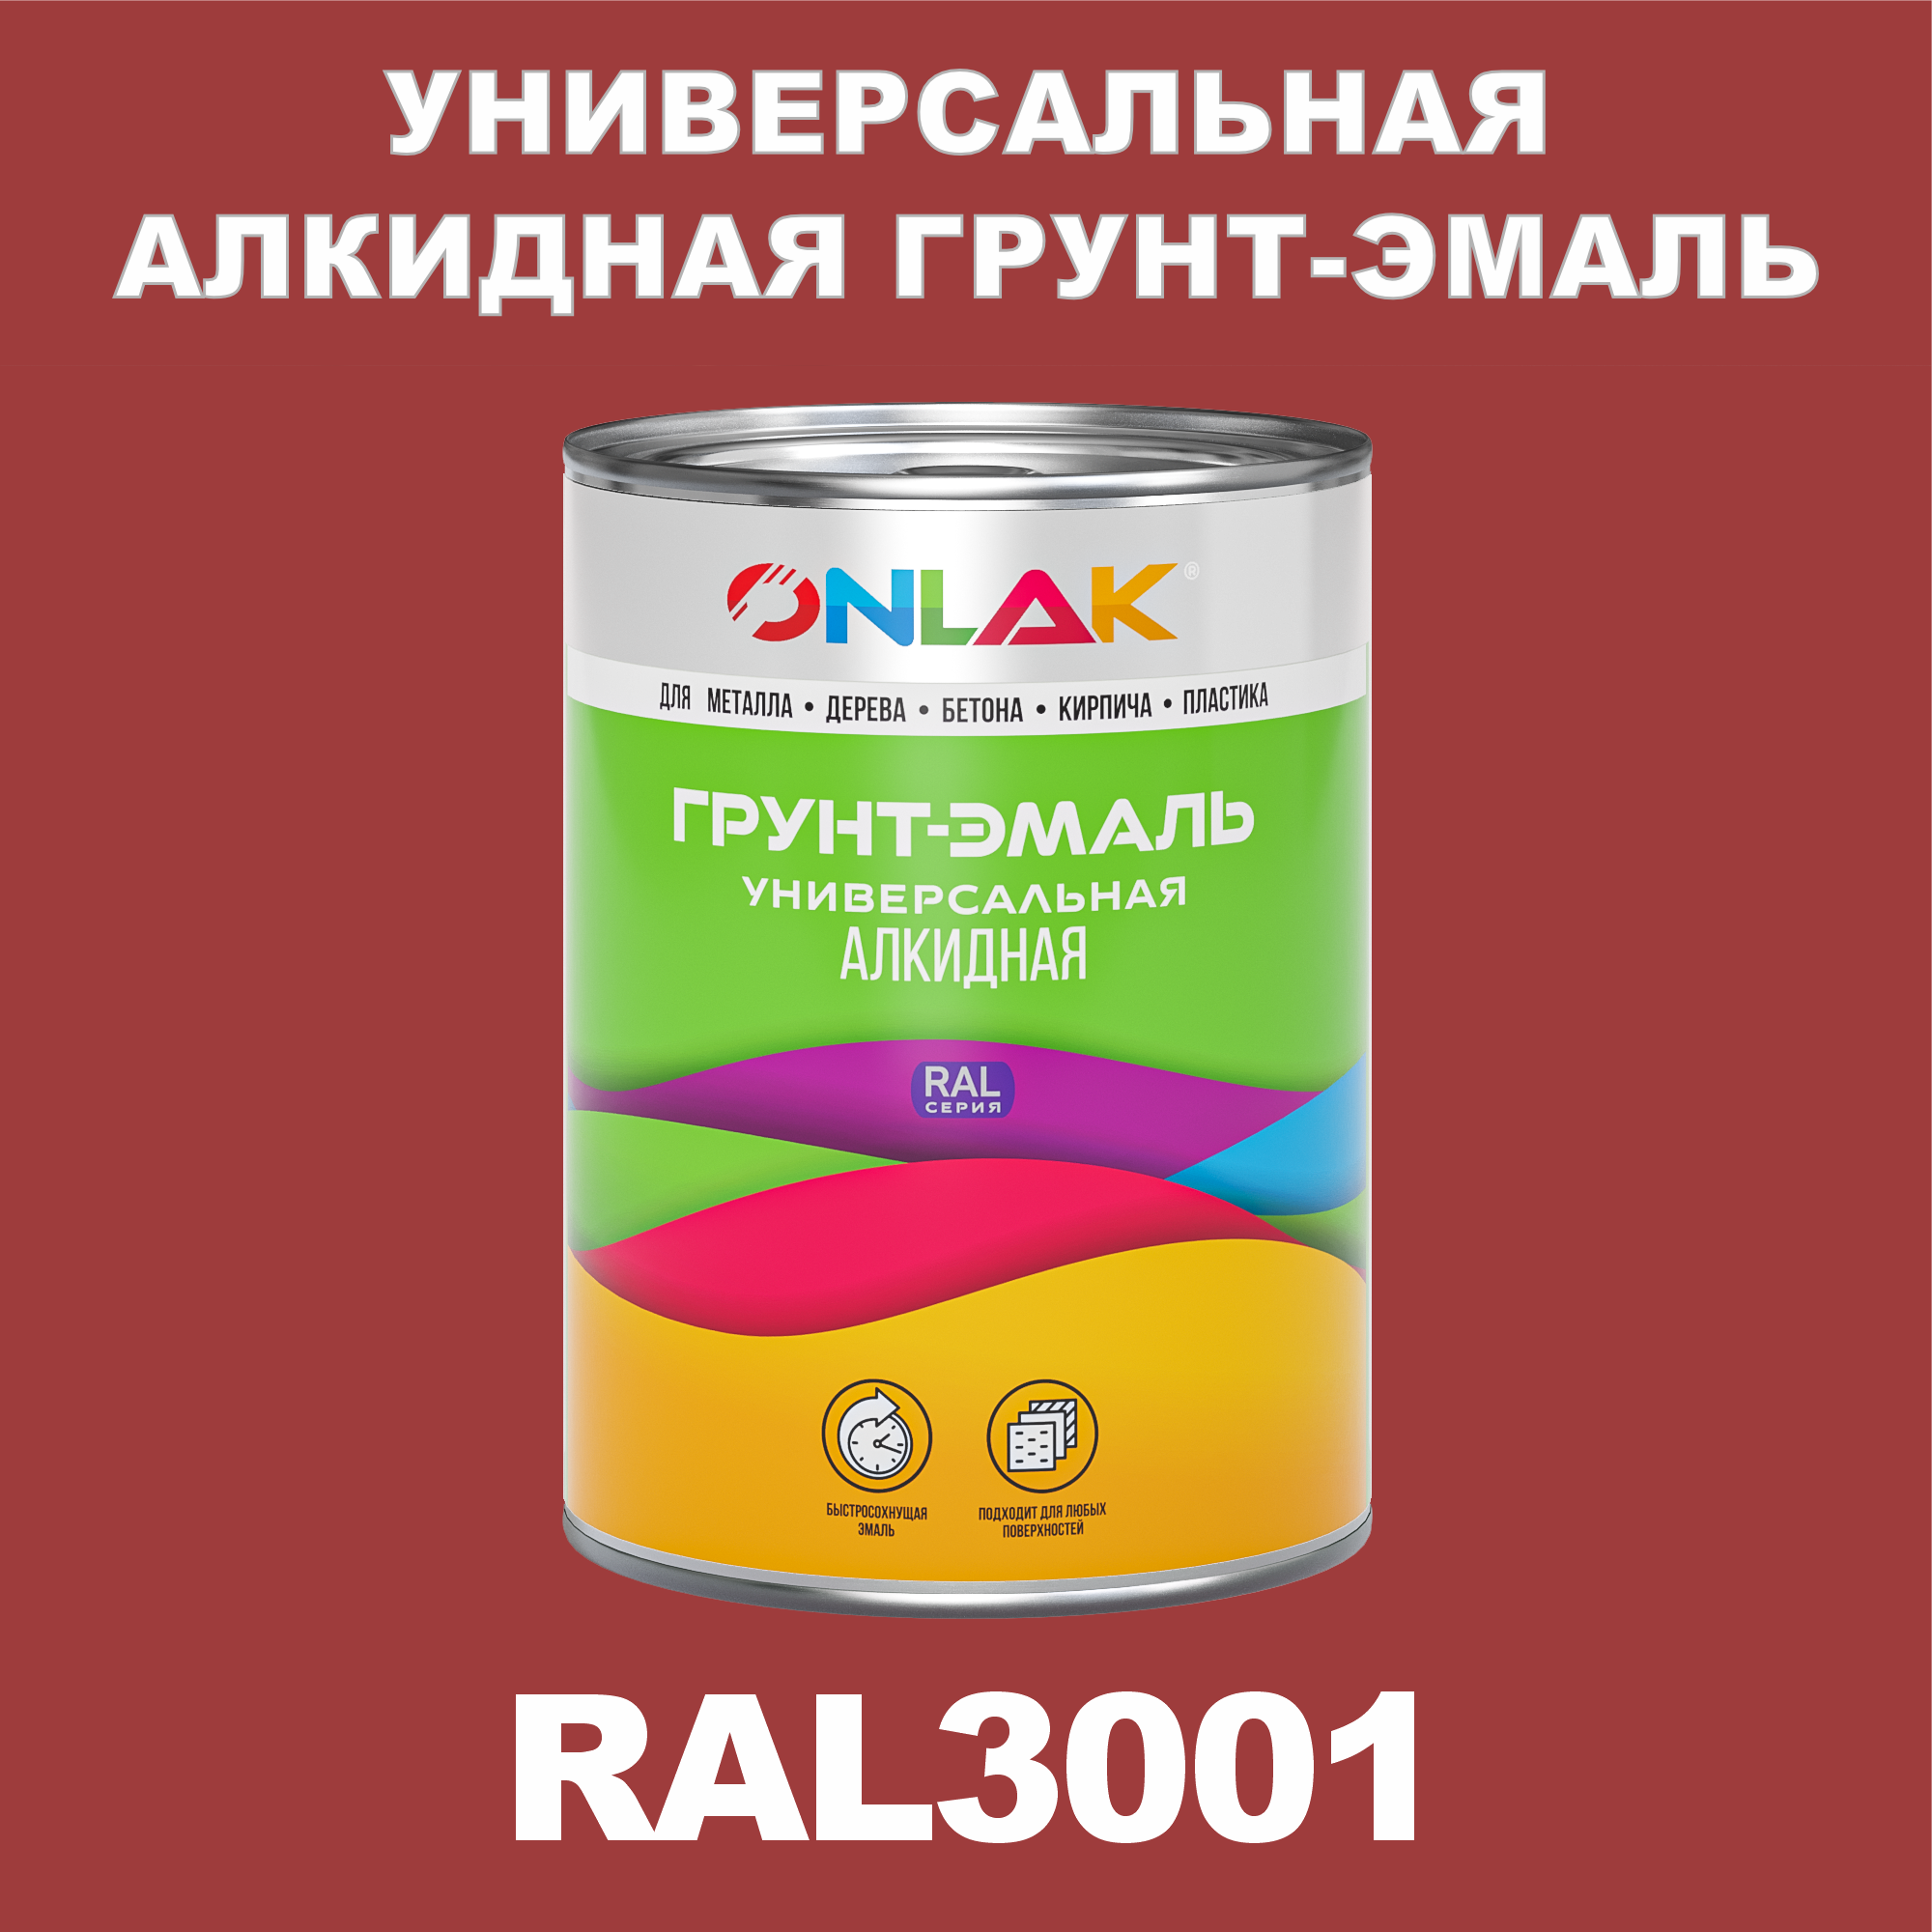 Грунт-эмаль ONLAK 1К RAL3001 антикоррозионная алкидная по металлу по ржавчине 1 кг